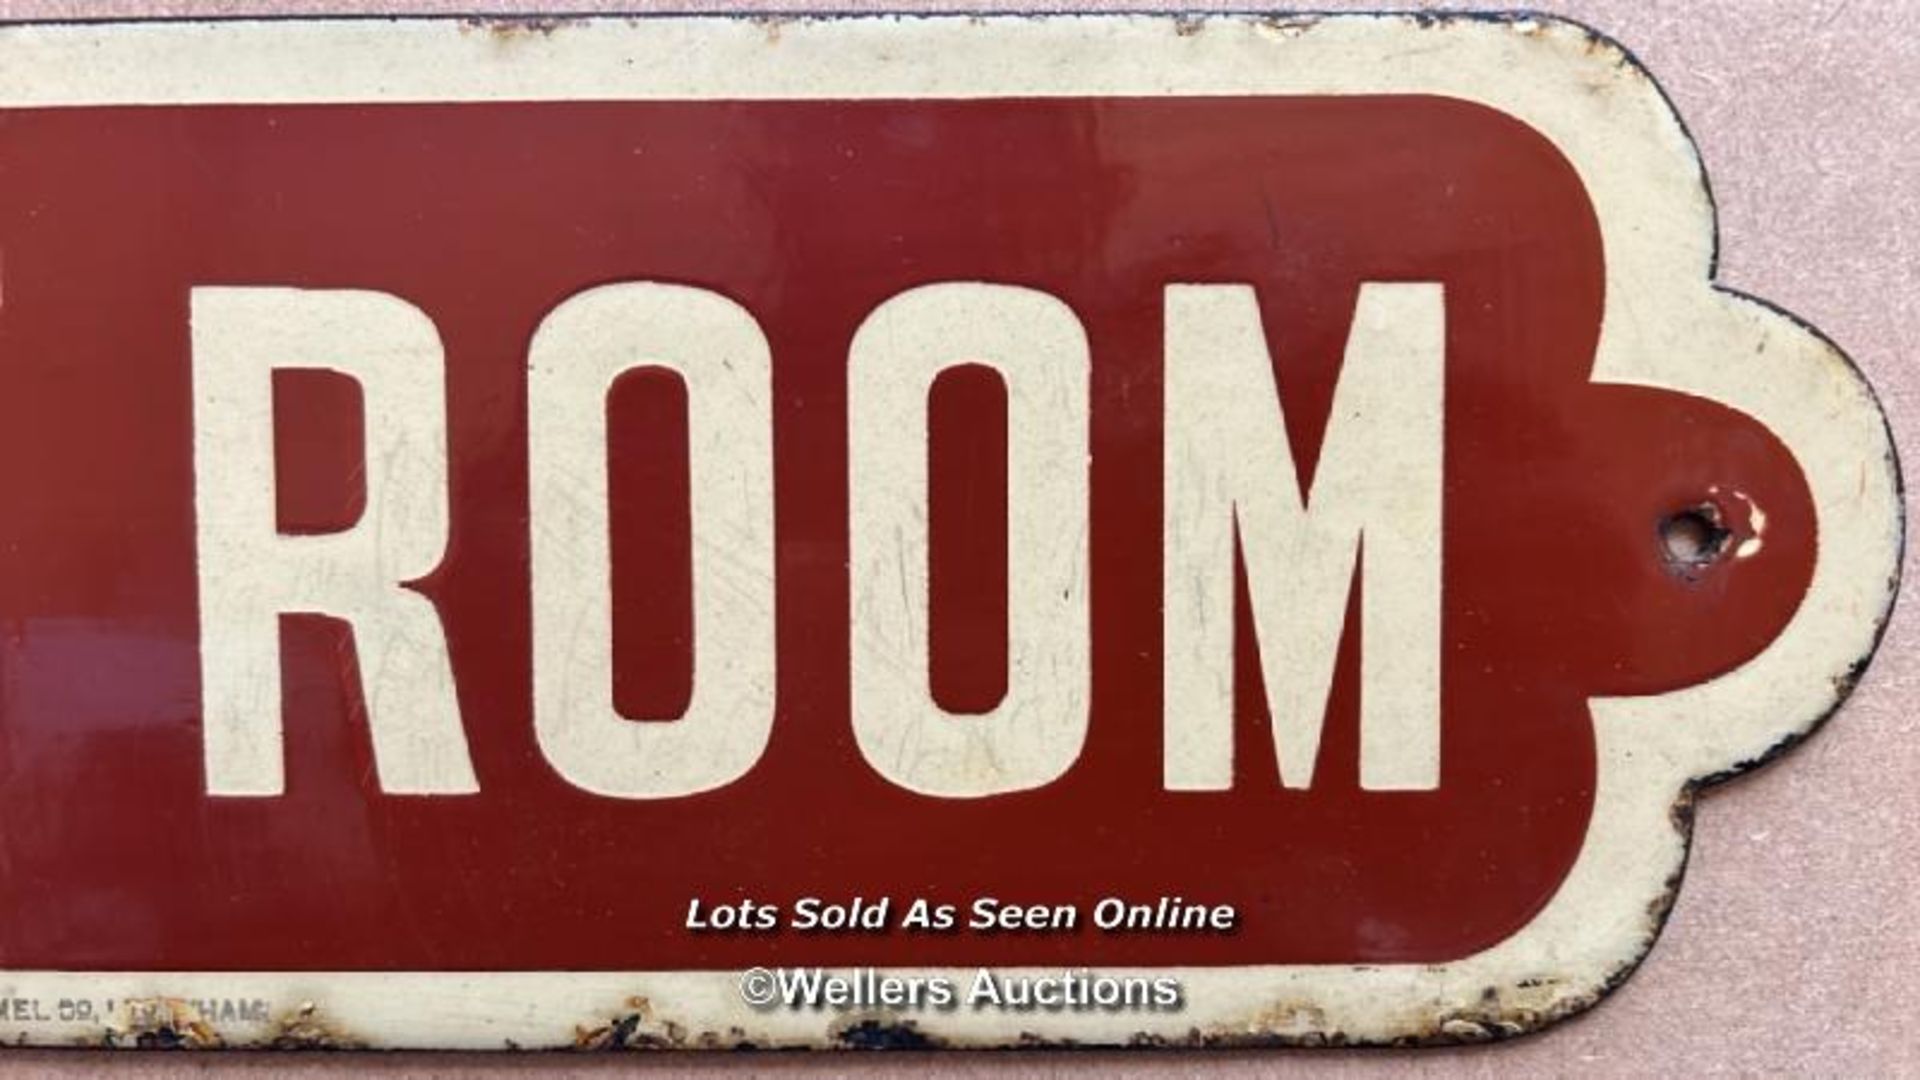 Vintage enamel railway sign "LADIES' ROOM" , 57x13.2cm - Image 3 of 5